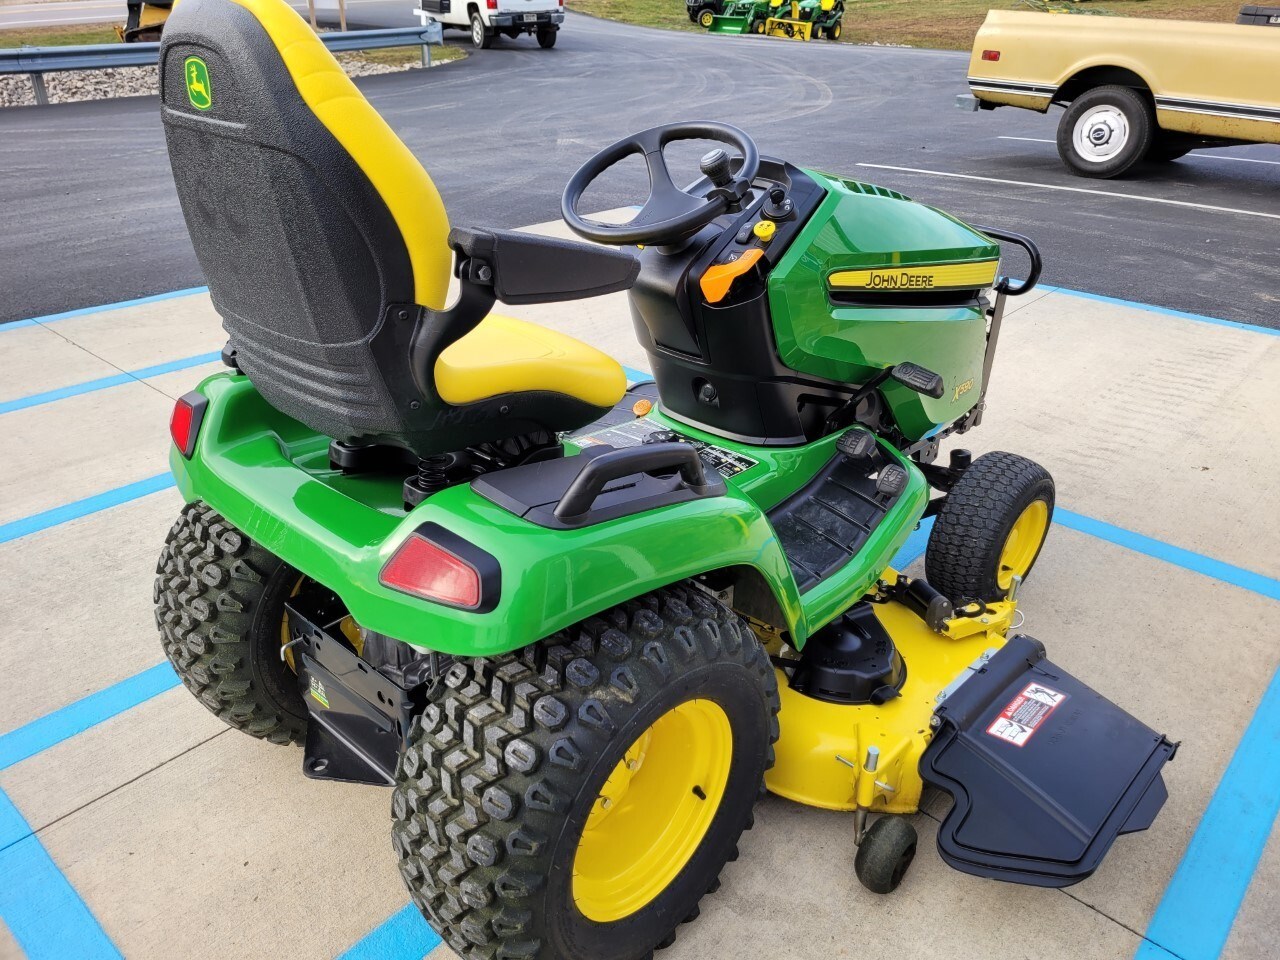 2018 John Deere X590 Lawn Mower For Sale